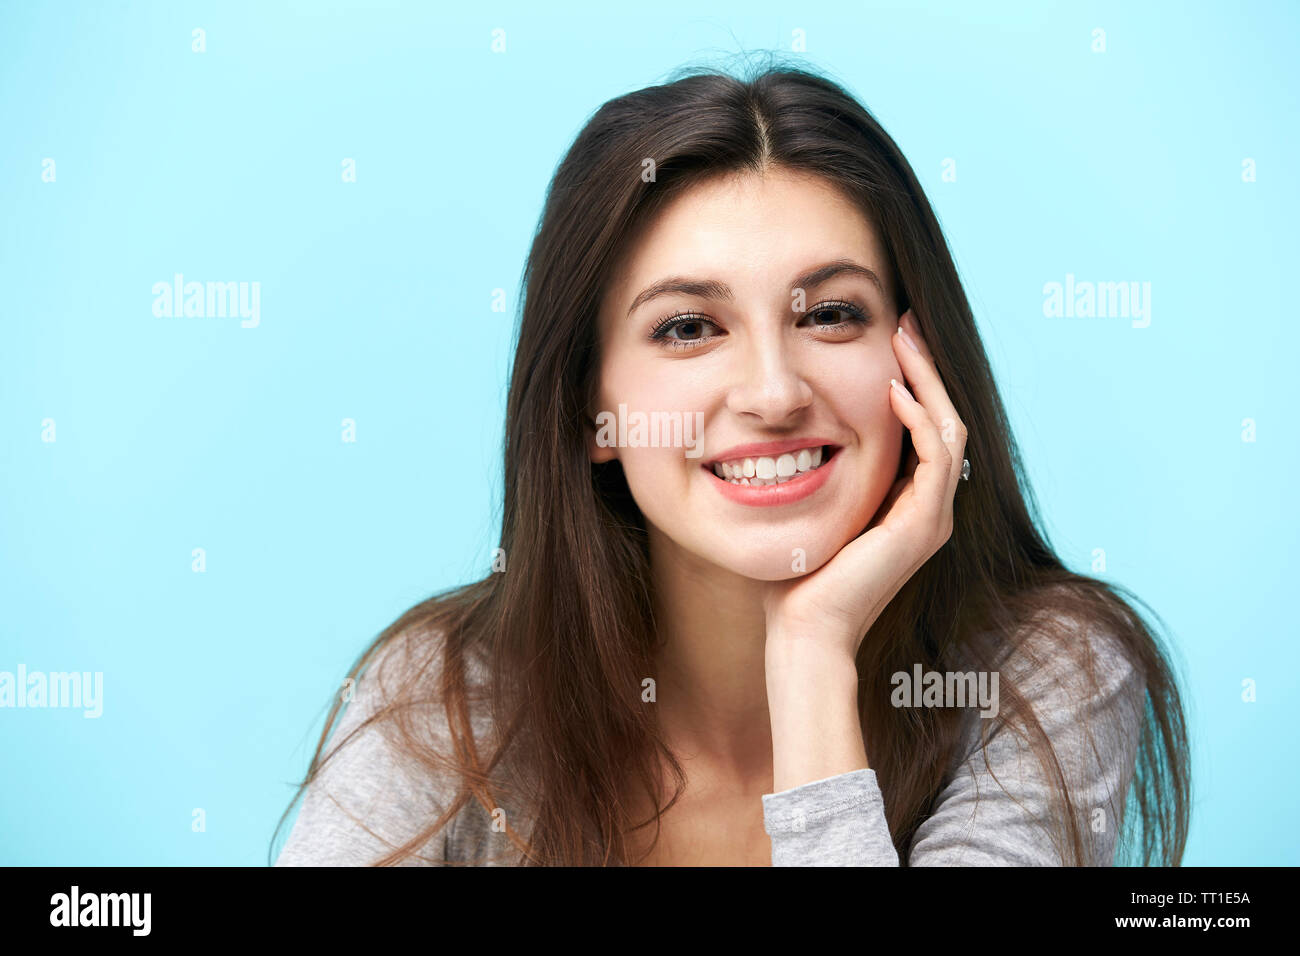 Retrato de una joven y bella mujer caucásica, mirando a la cámara sonriendo, con la mano en la mejilla, aislado sobre fondo azul. Foto de stock